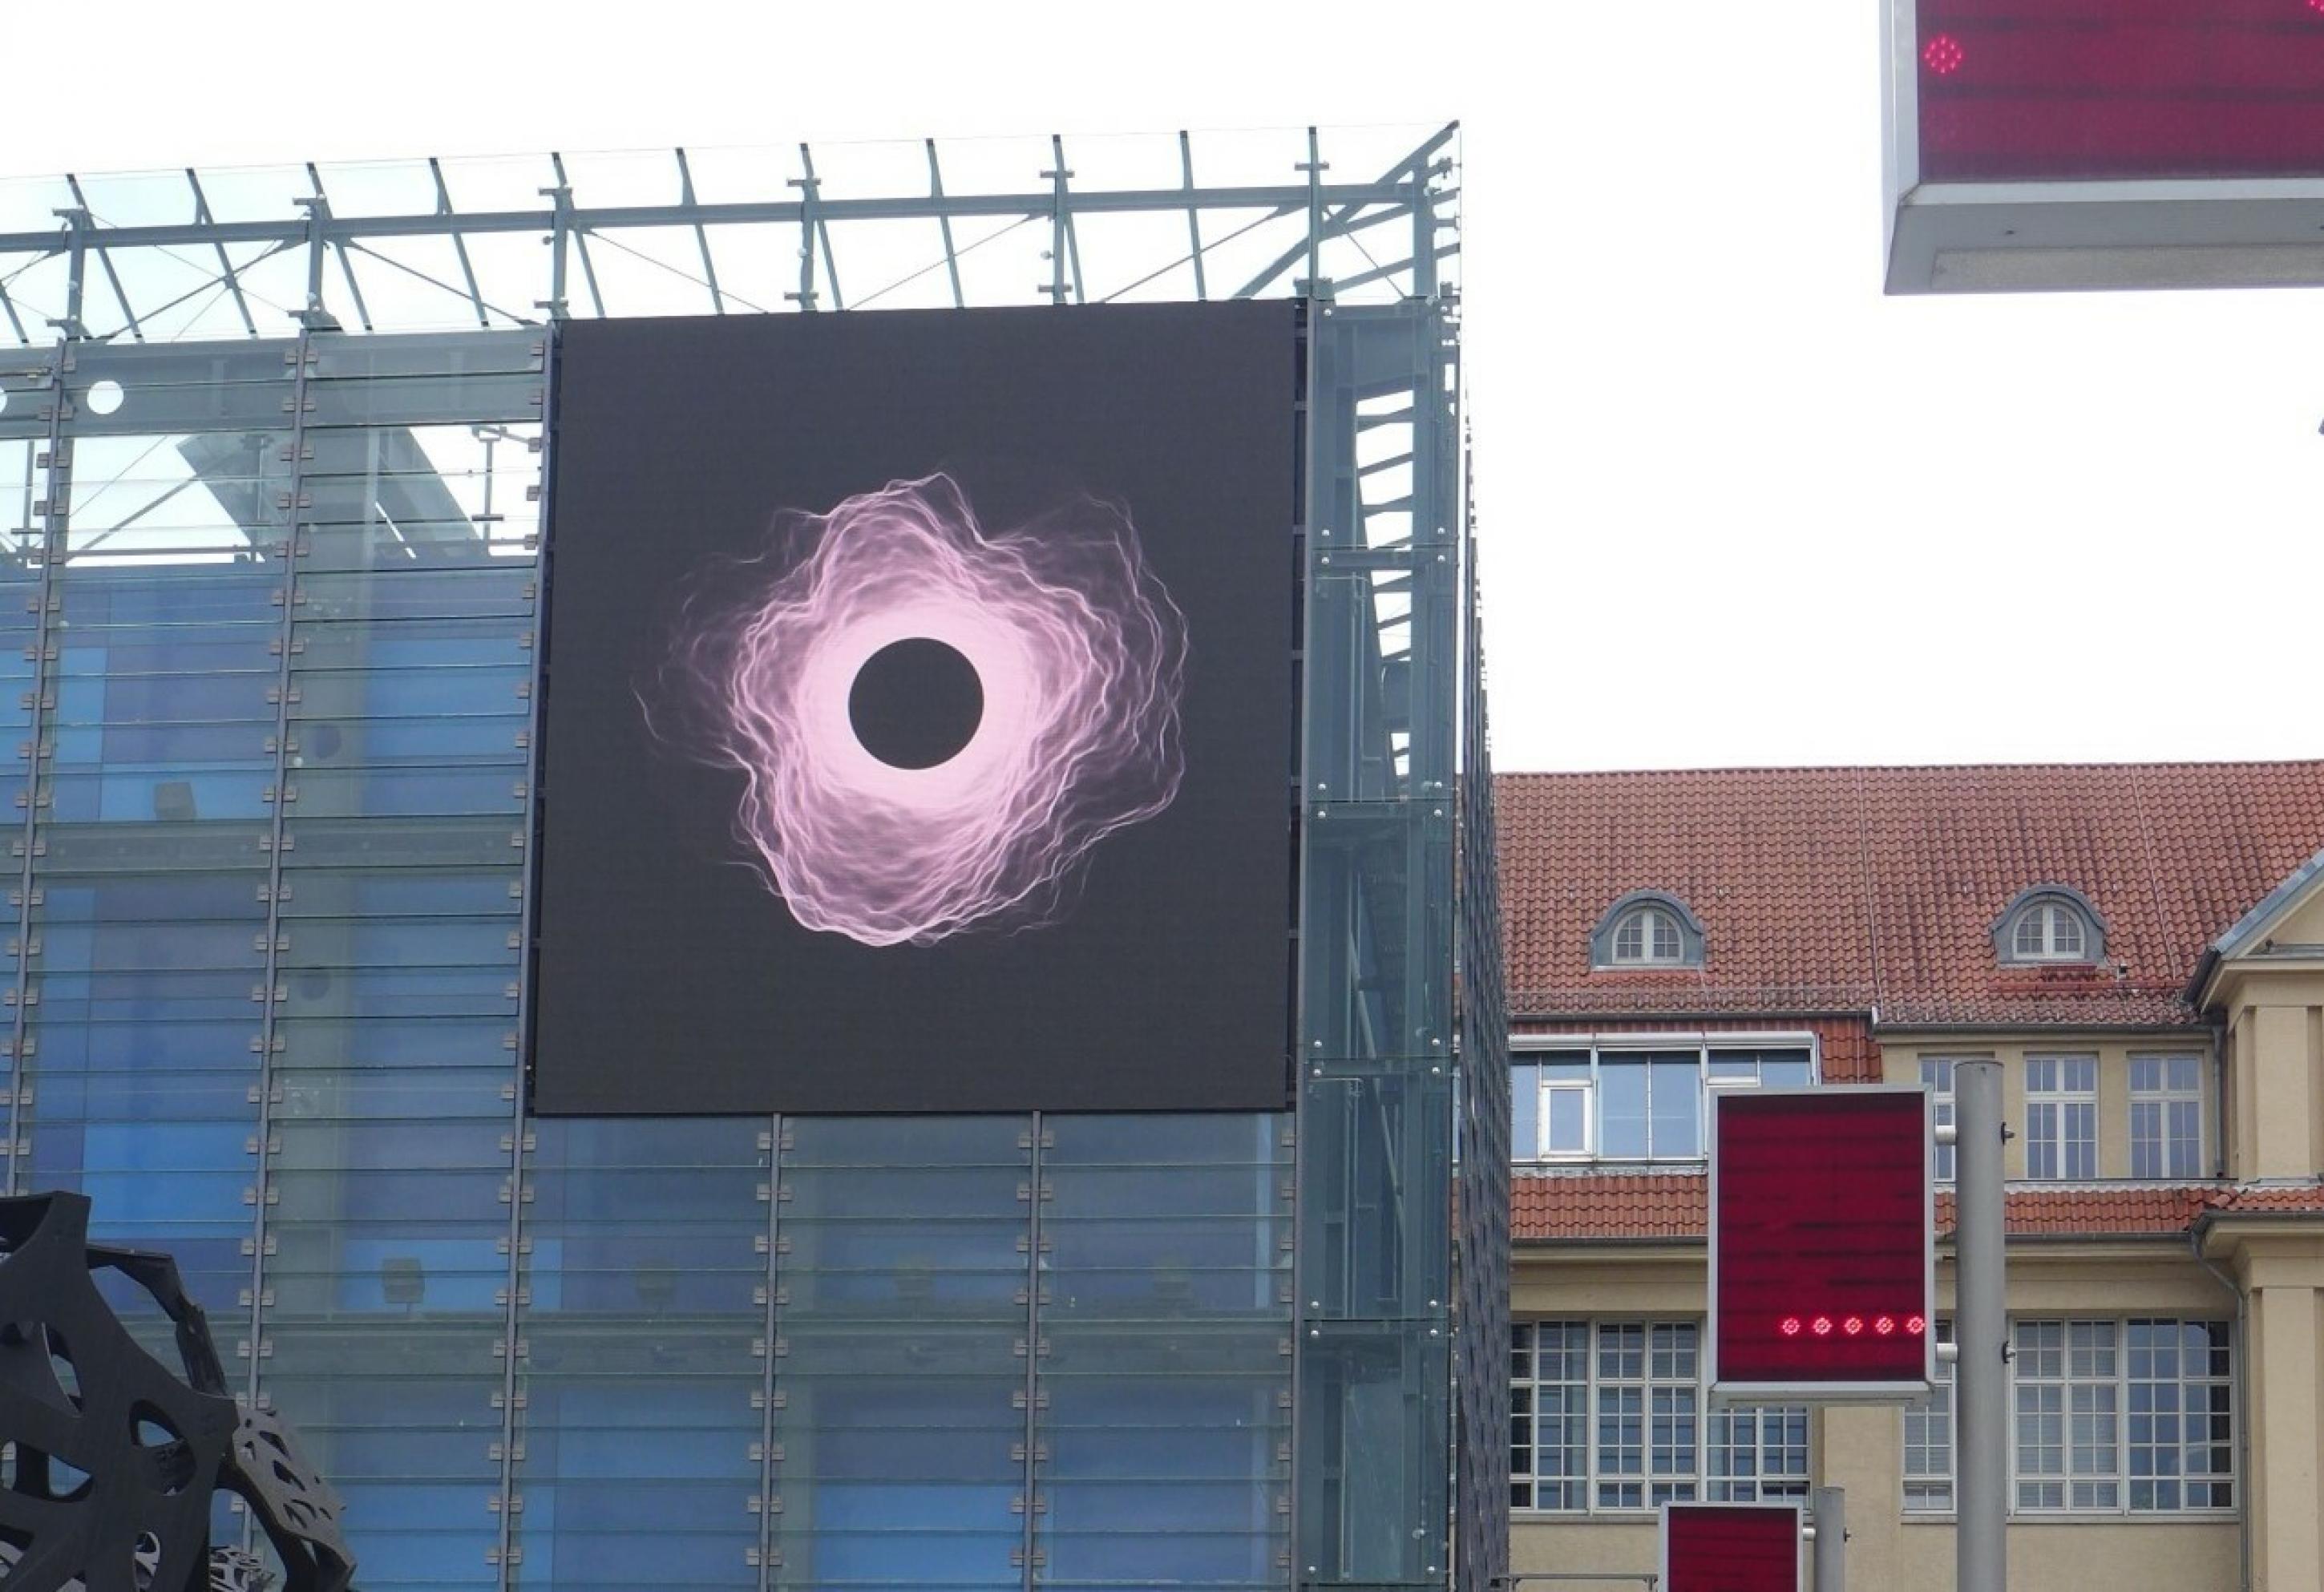 Eine LED-Wand, die einen schwarzen Kreis mit einer Corona zeigt, wie sie bei der Sonnenfinsternis vorkommt.